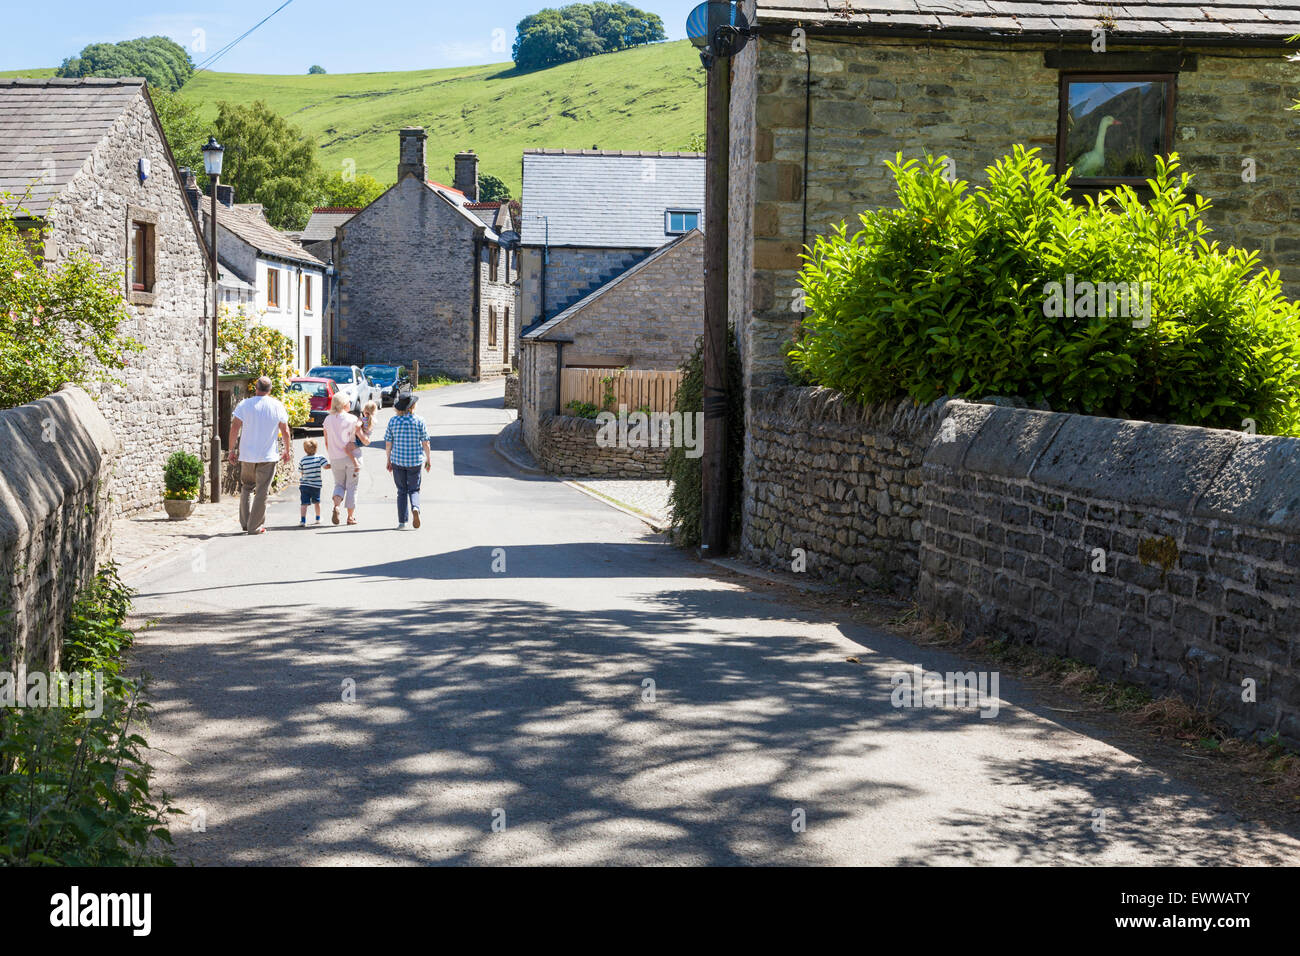 Menschen zu Fuß an einer ruhigen Straße in der englischen Dorf Castleton, Derbyshire, Peak District, England, Großbritannien im Sommer Stockfoto